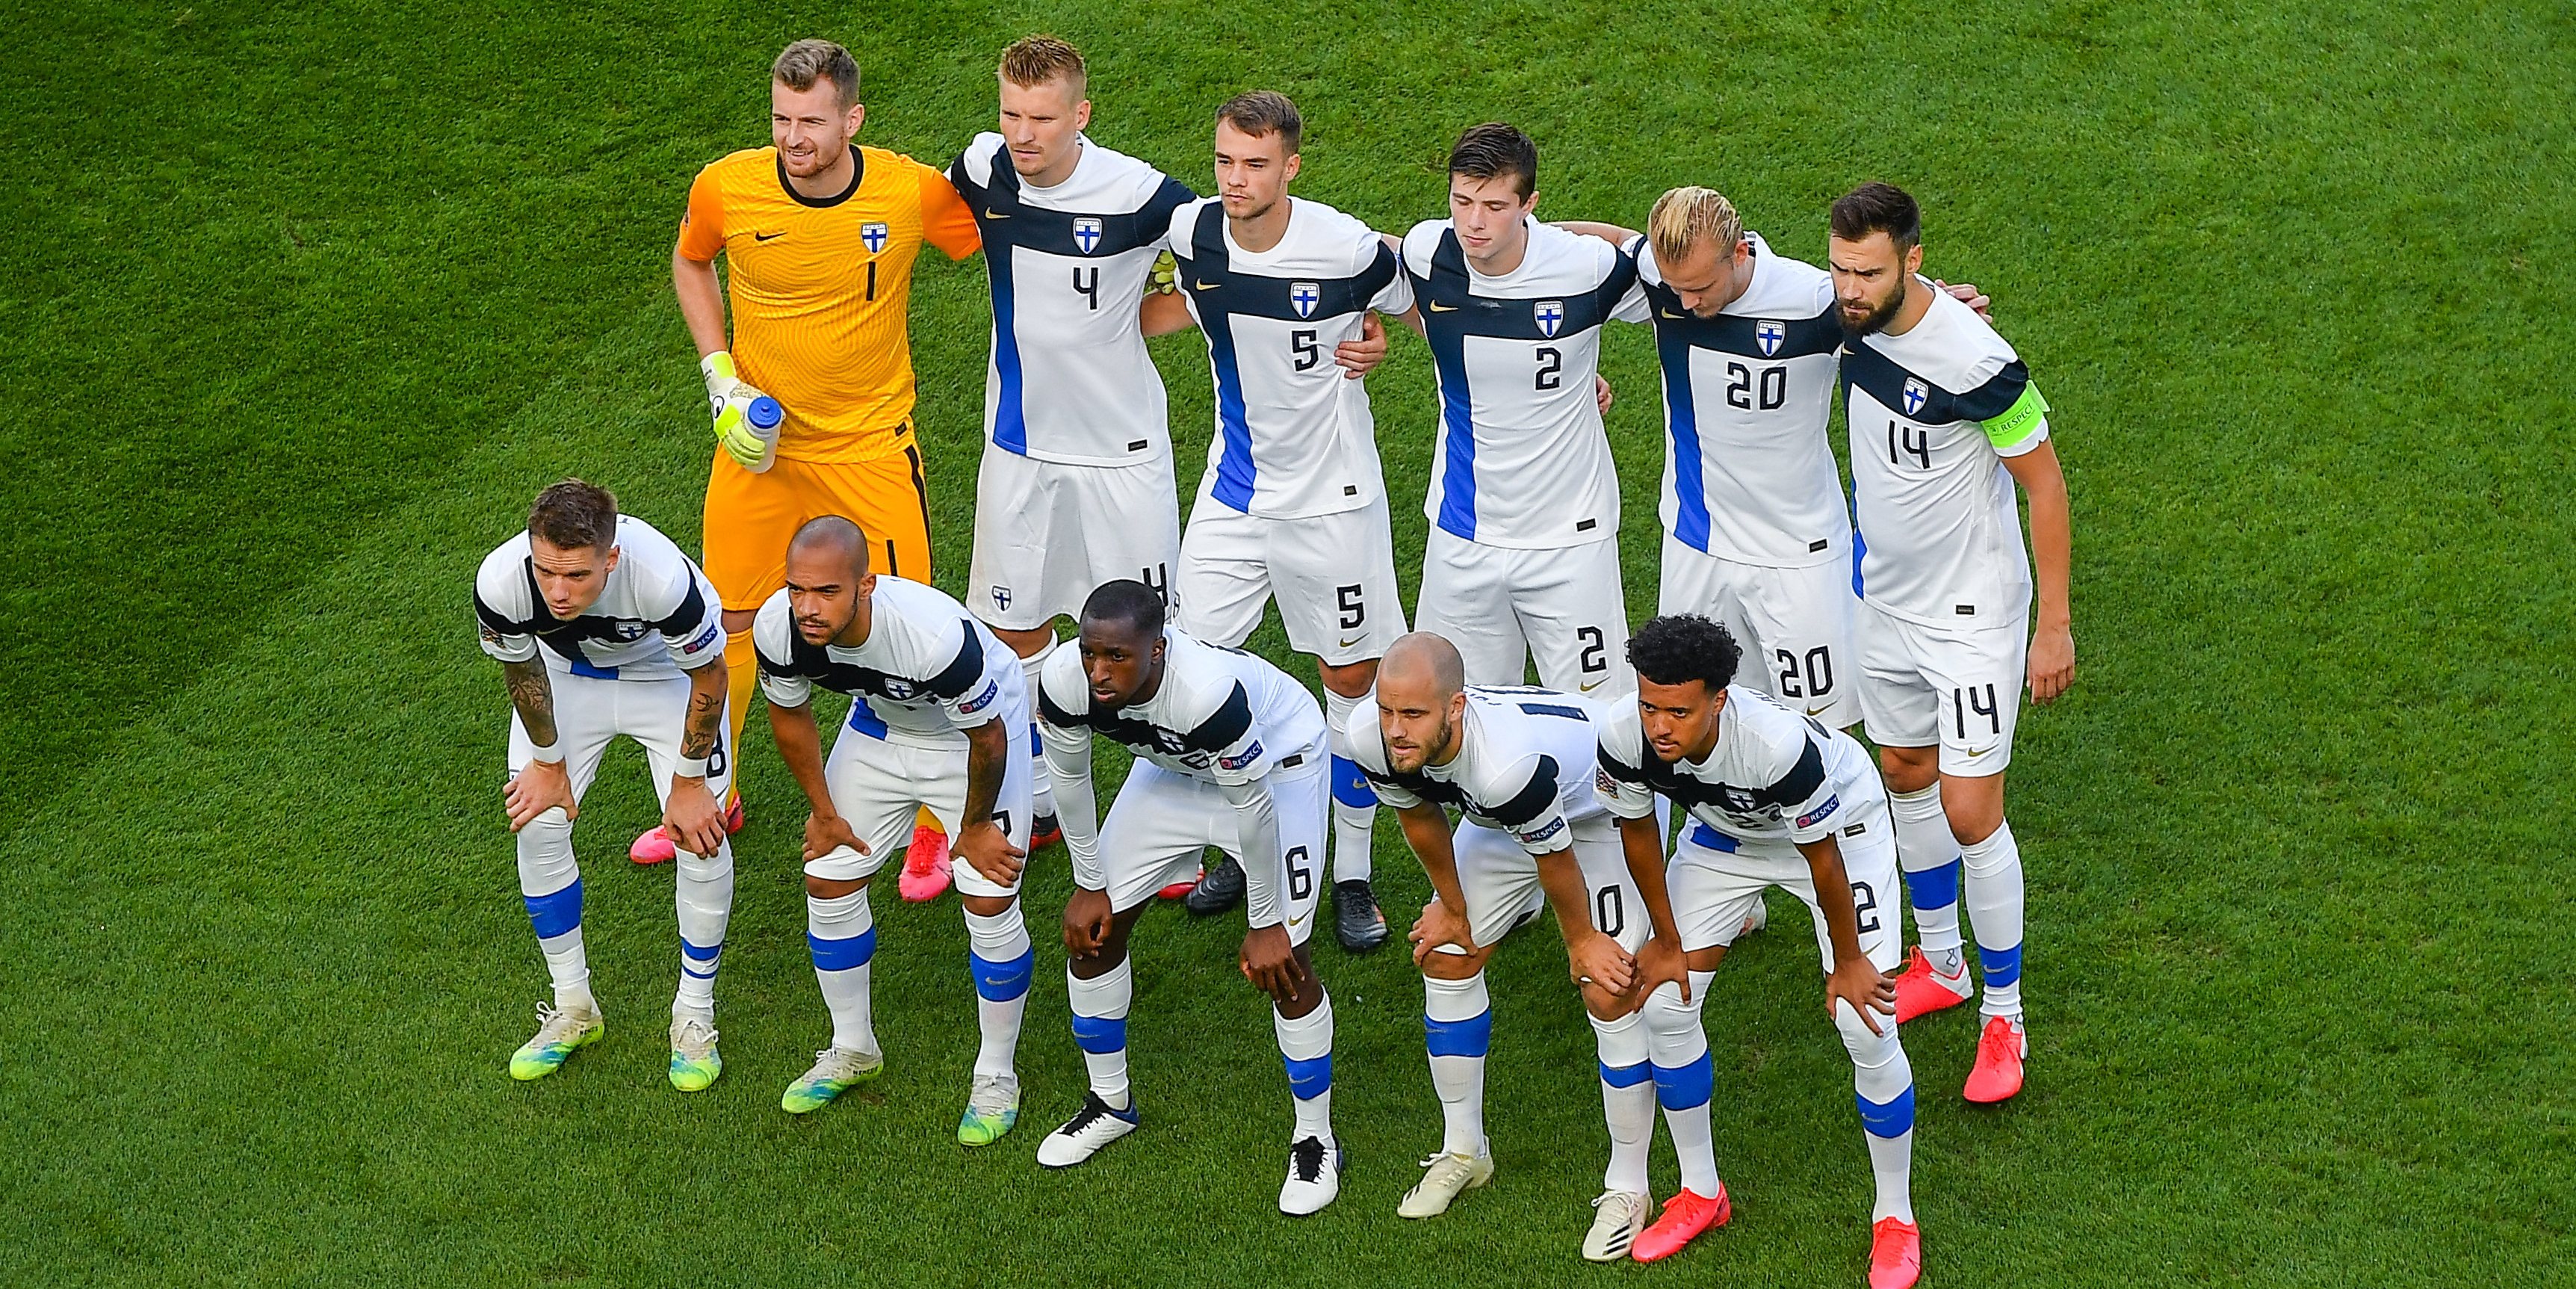 Finlândia conseguiu a qualificação para o Euro-2020 no segundo lugar do grupo J, onde perdeu com a Itália mas superou Grécia, Bósnia, Arménia e Liechtenstein